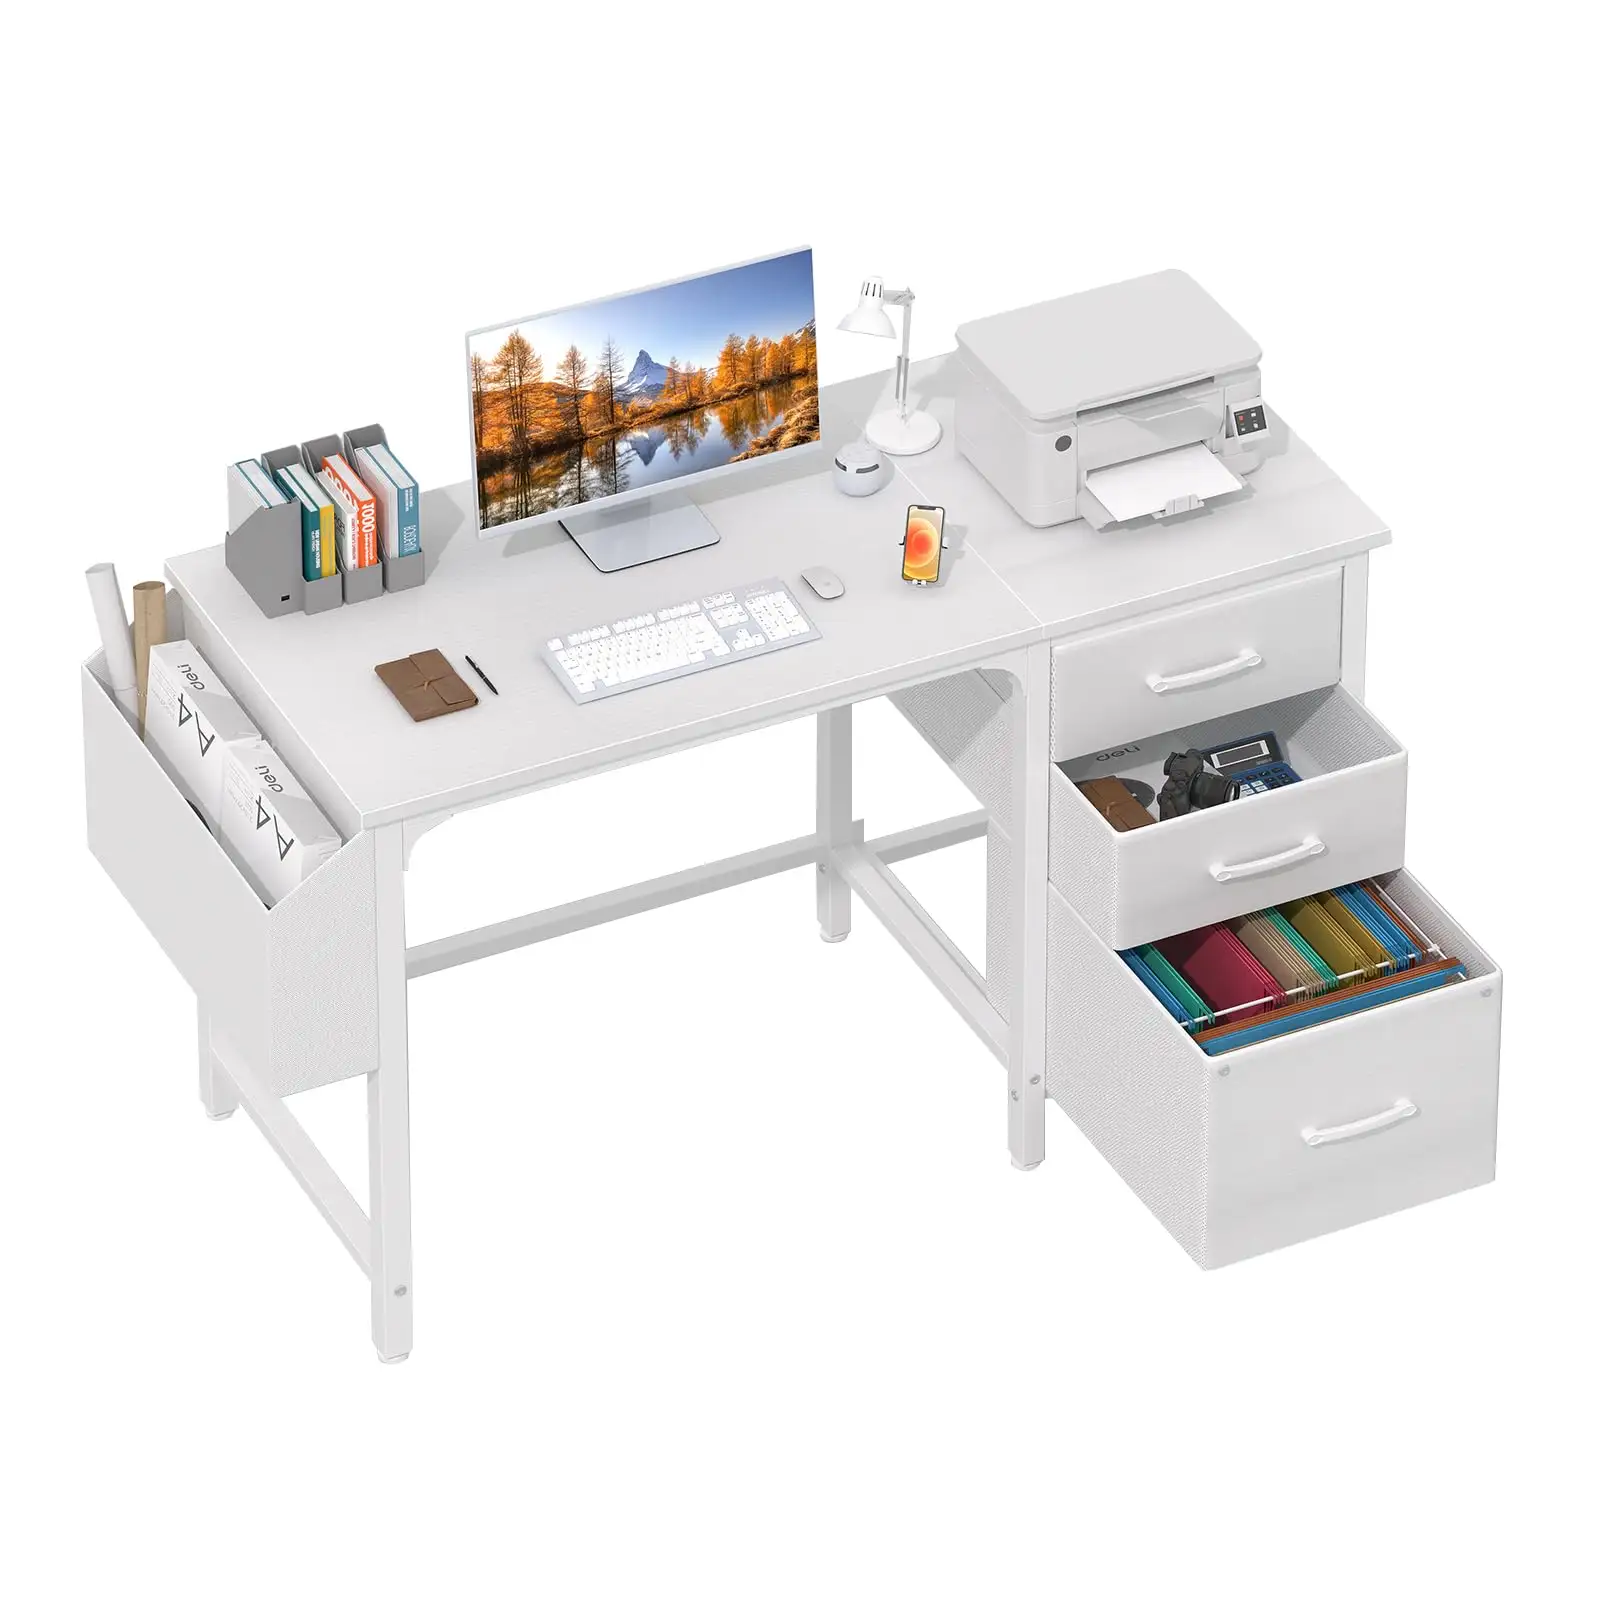 Meja komputer rumah kantor putih Modern 47 inci, dengan kabinet arsip kain, Laci kabinet ruang kecil meja tulis PC